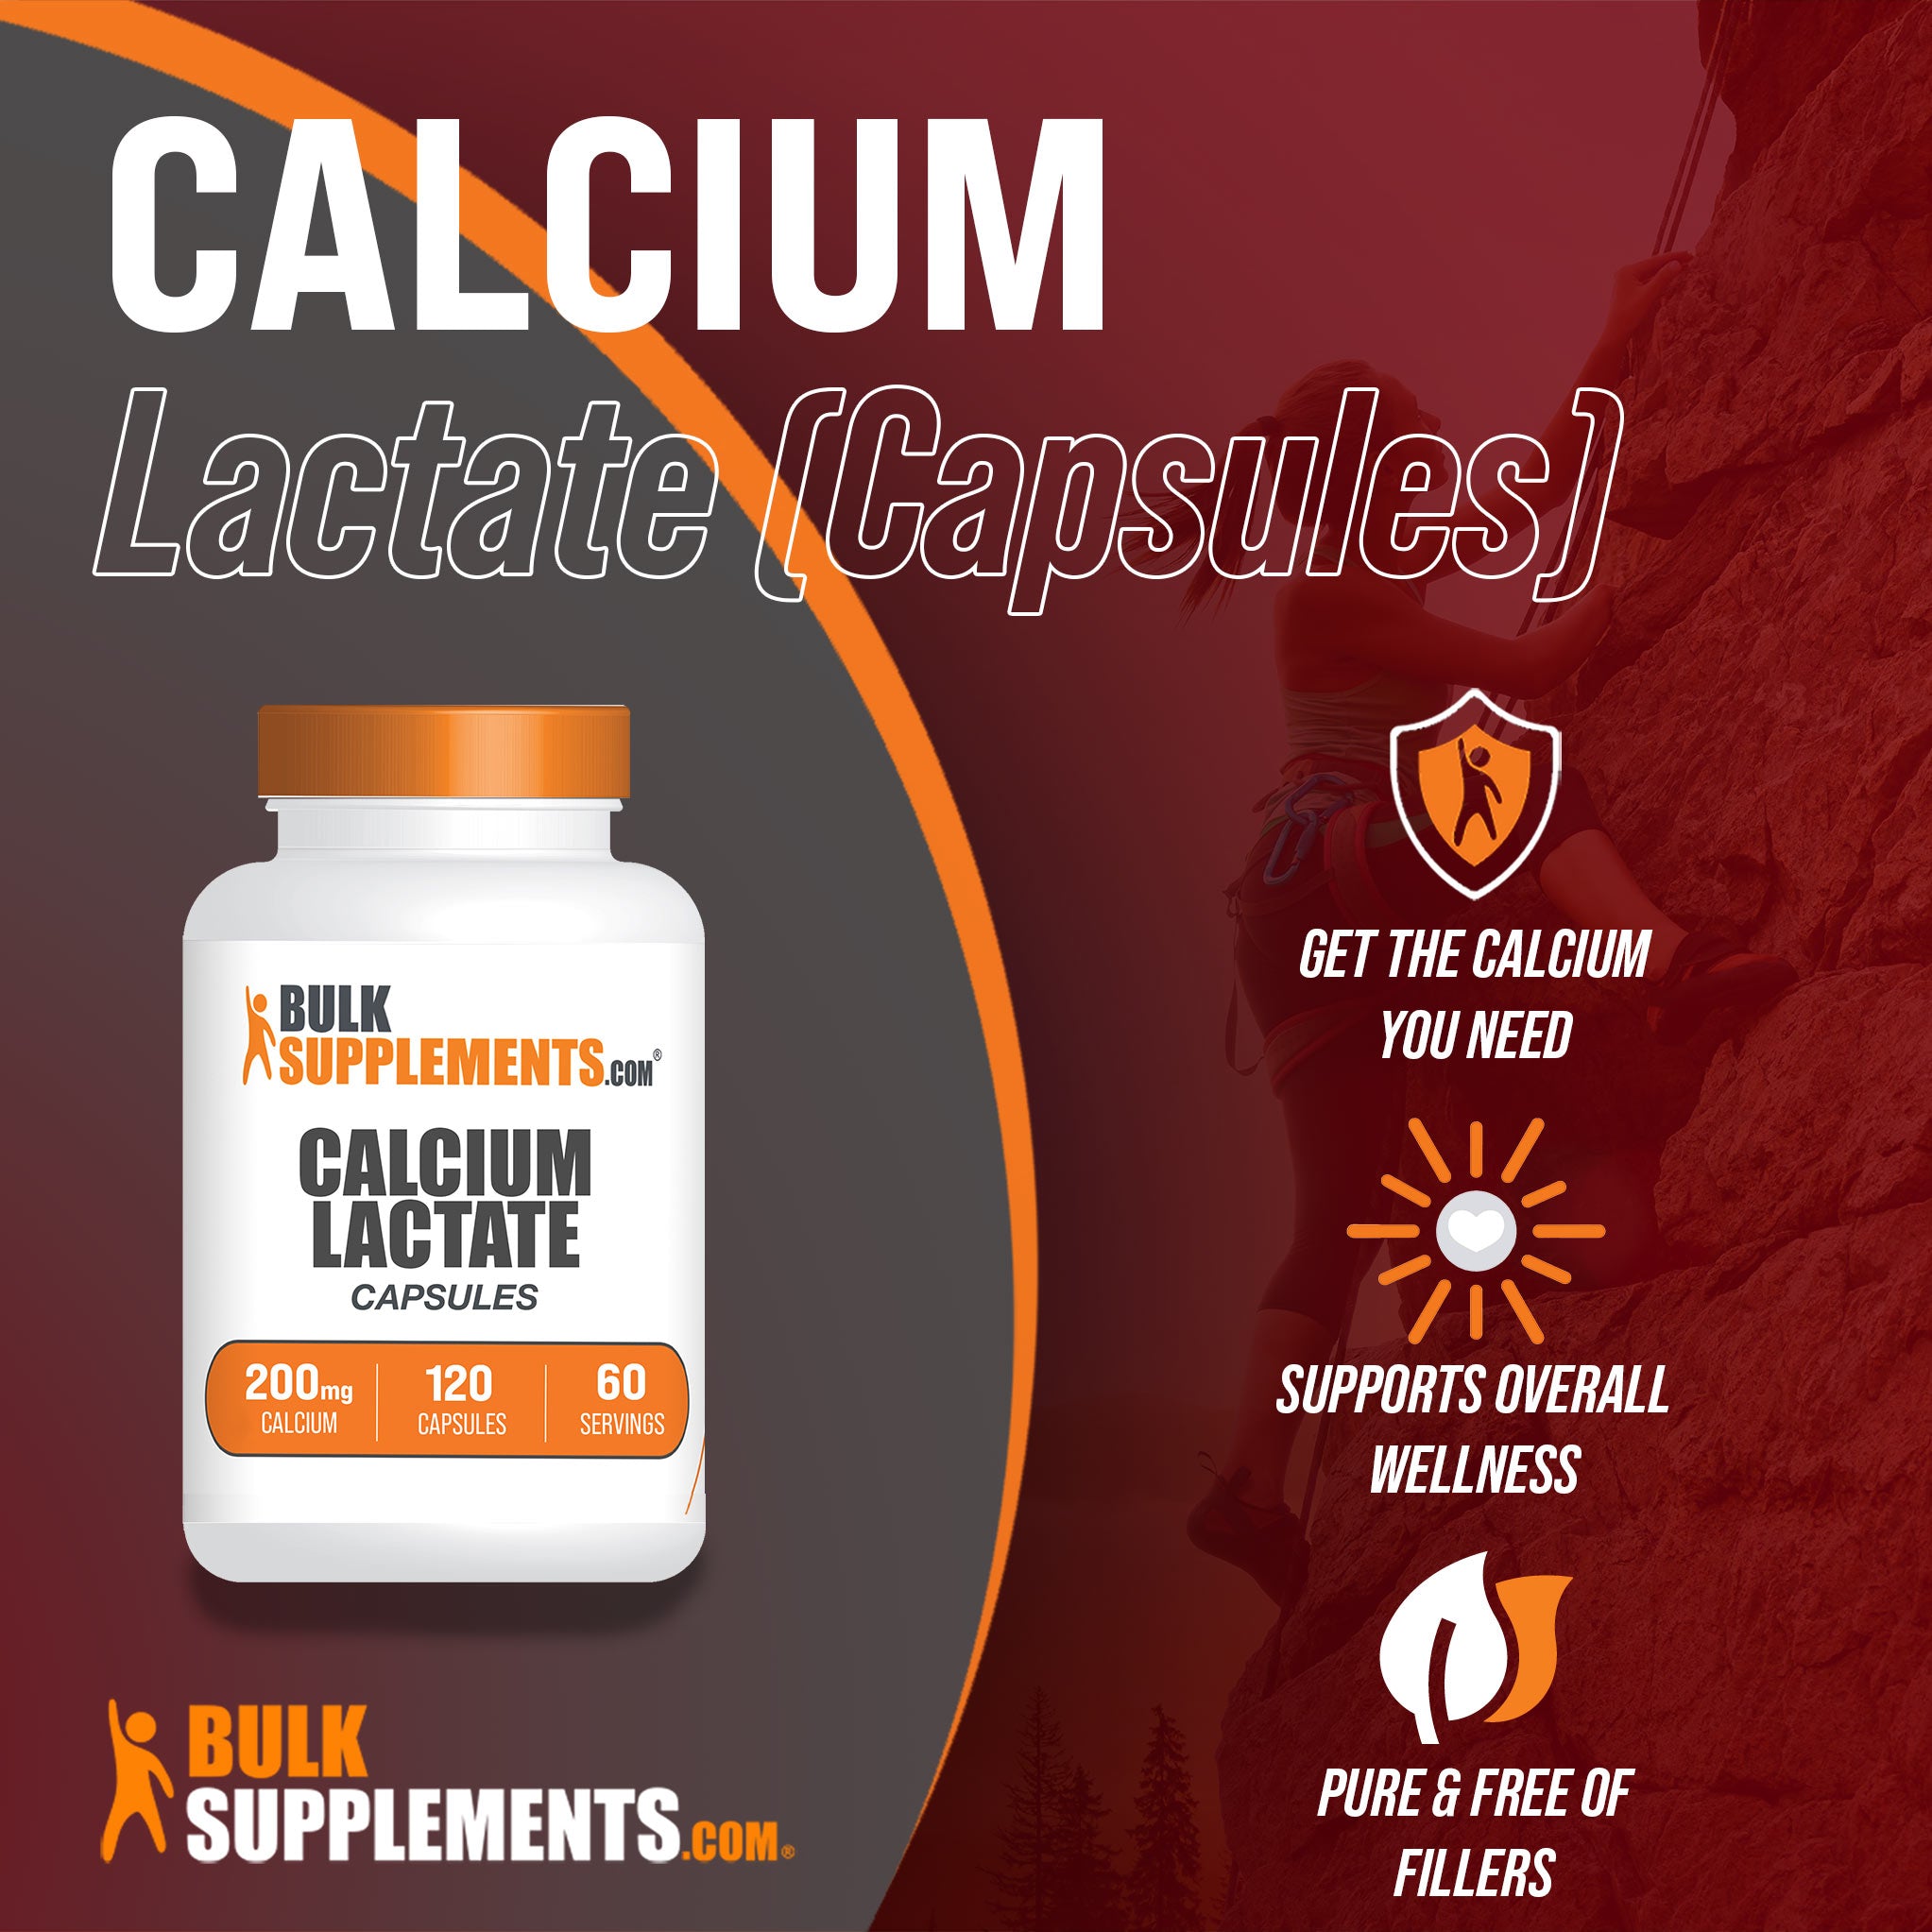 120 calcium lactate capsules are pure and filler free